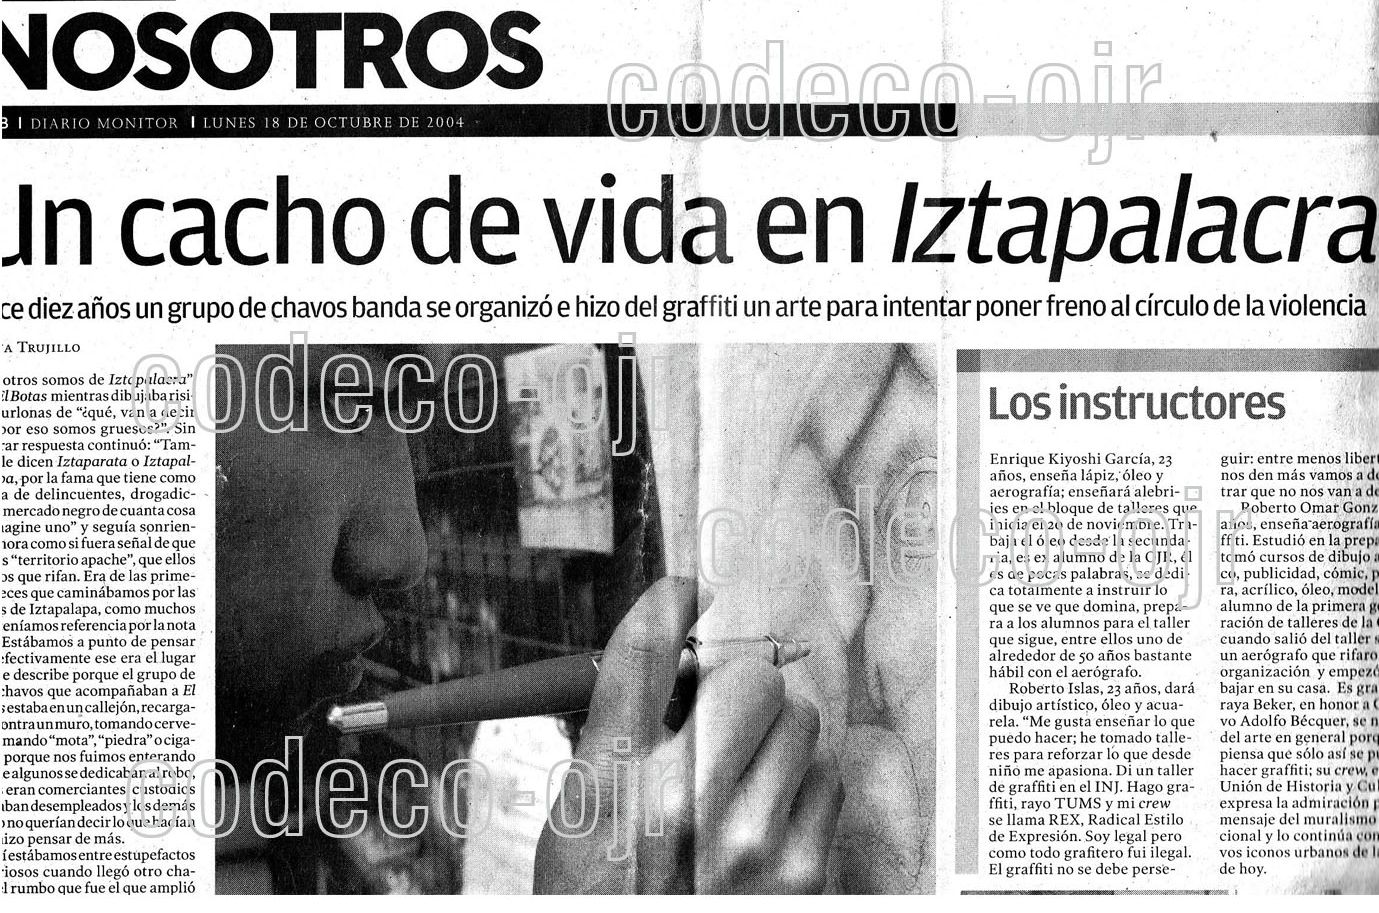 Archivo: UN CACHO DE VIDA IZTAPALACRA 1.jpg